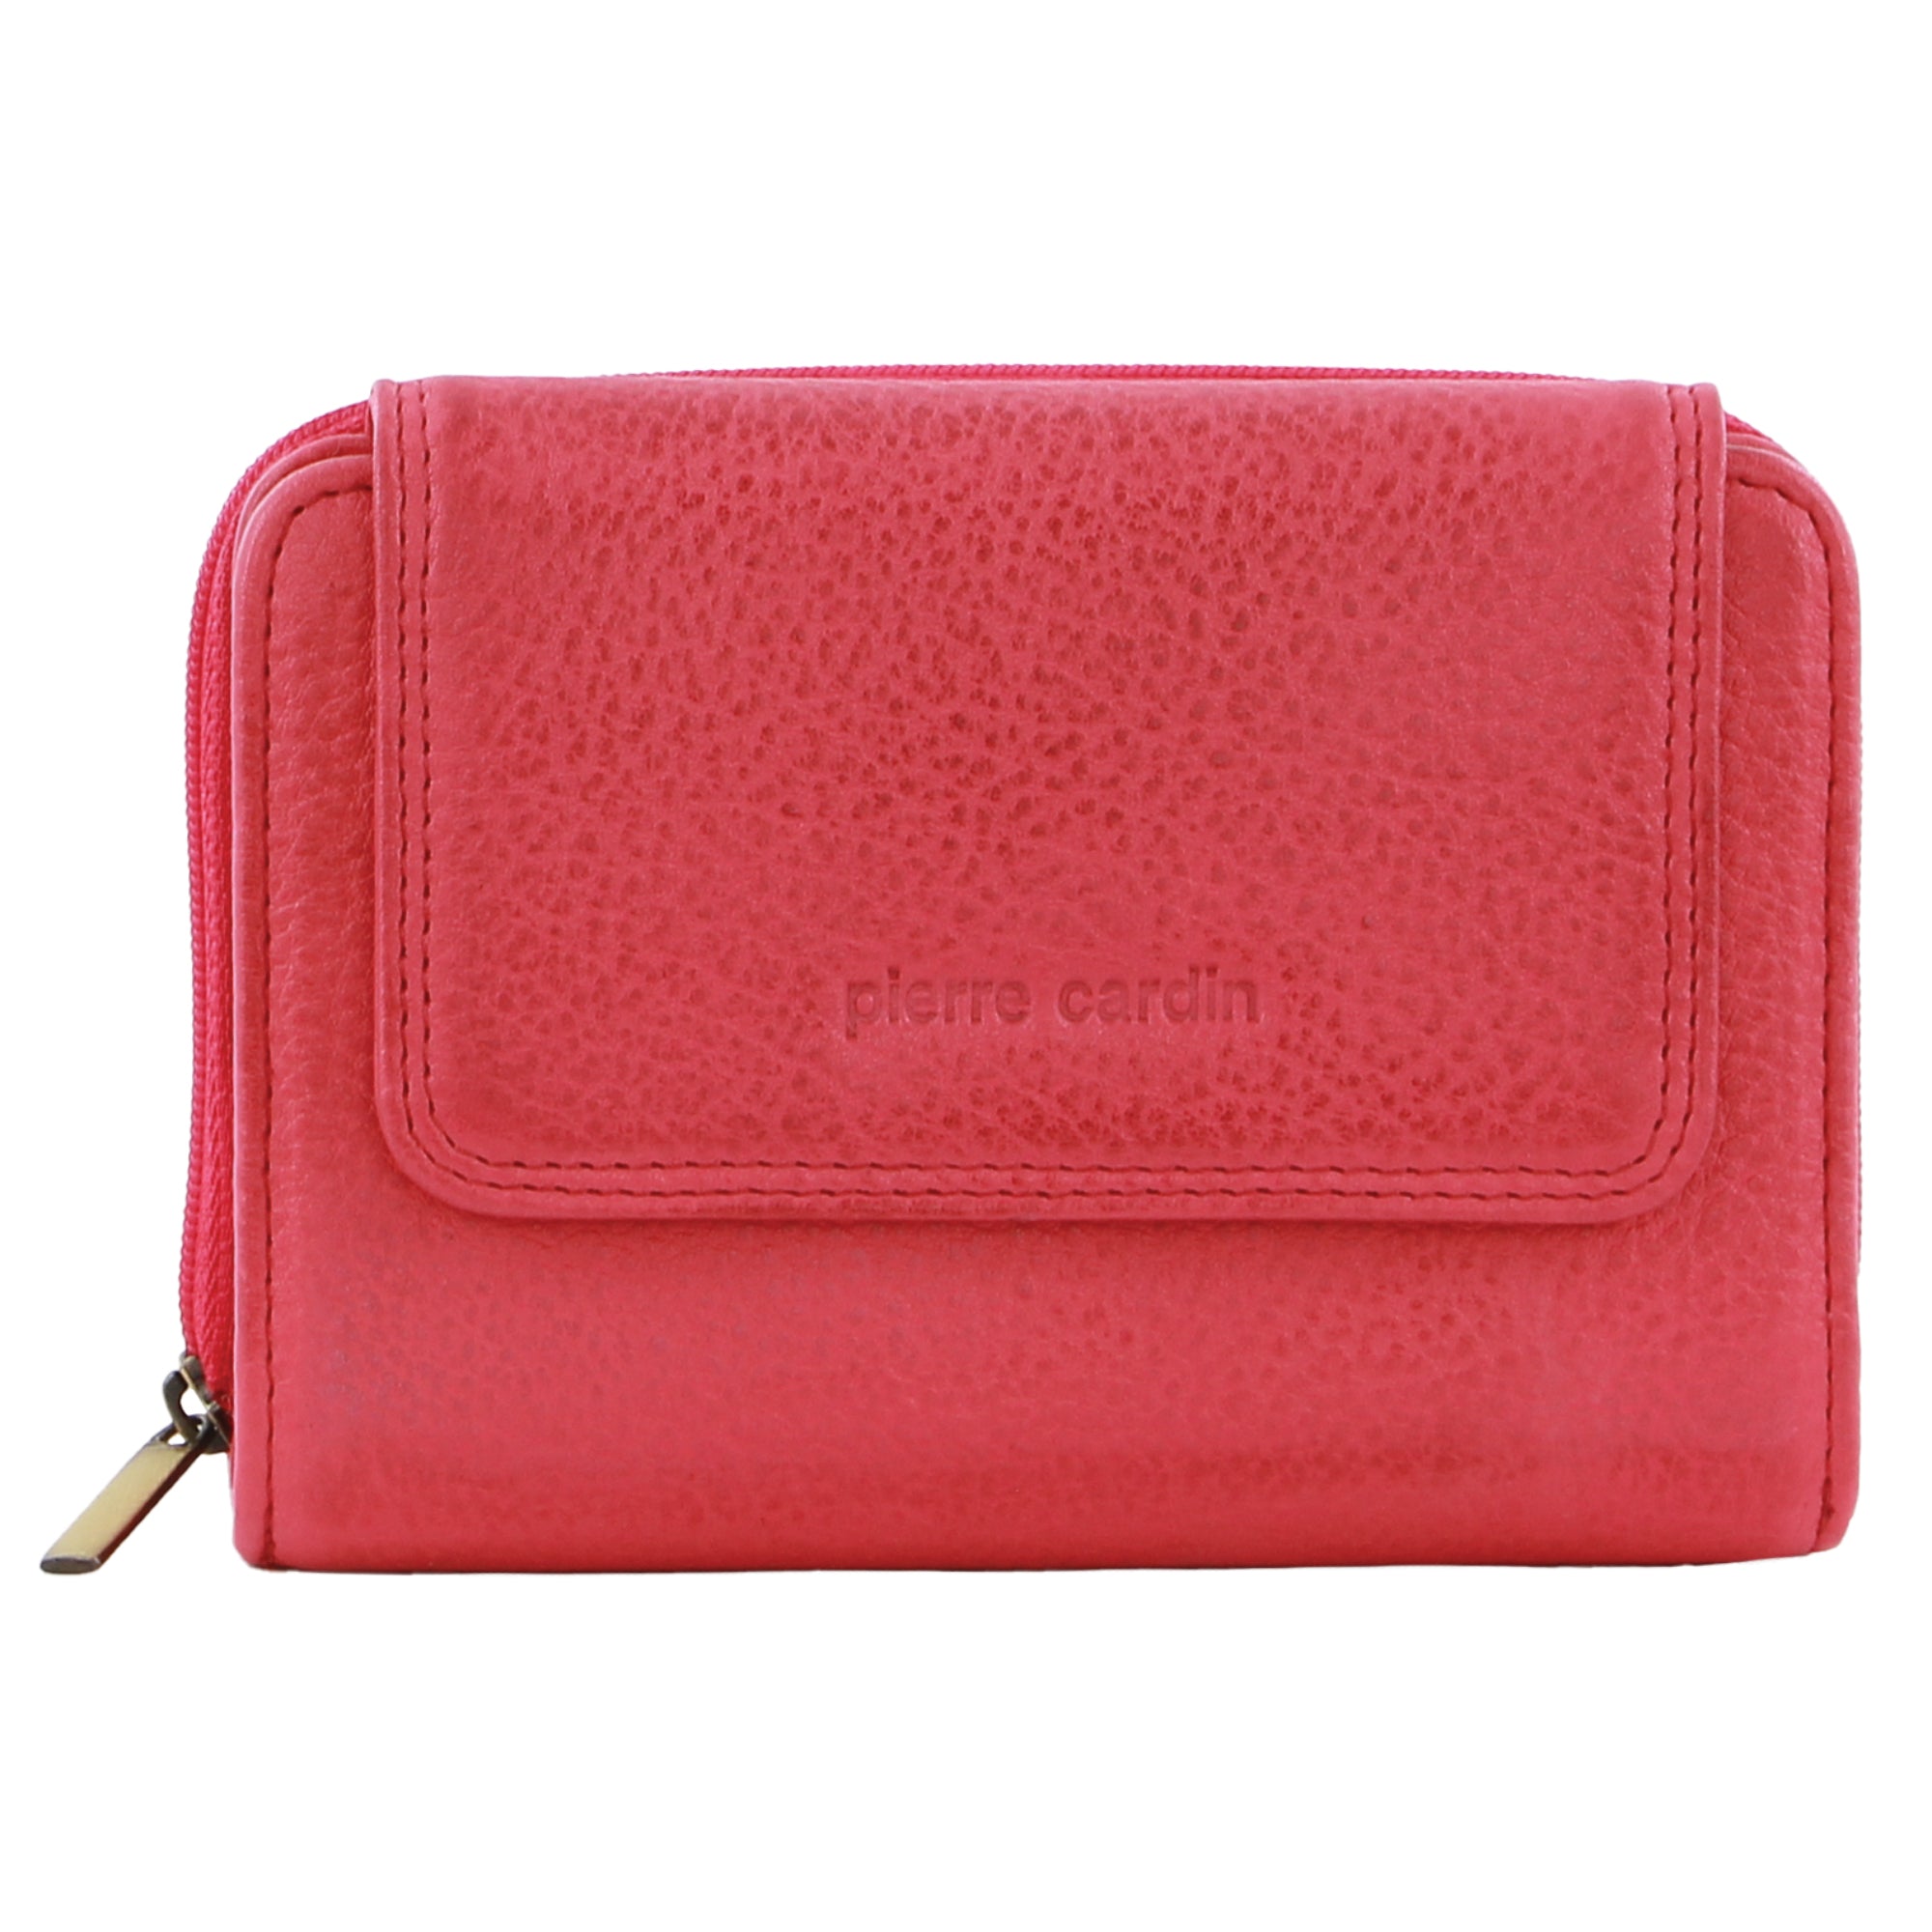 Pierre Cardin Women's Leather Compact Bi-Fold Tab Wallet in Pink